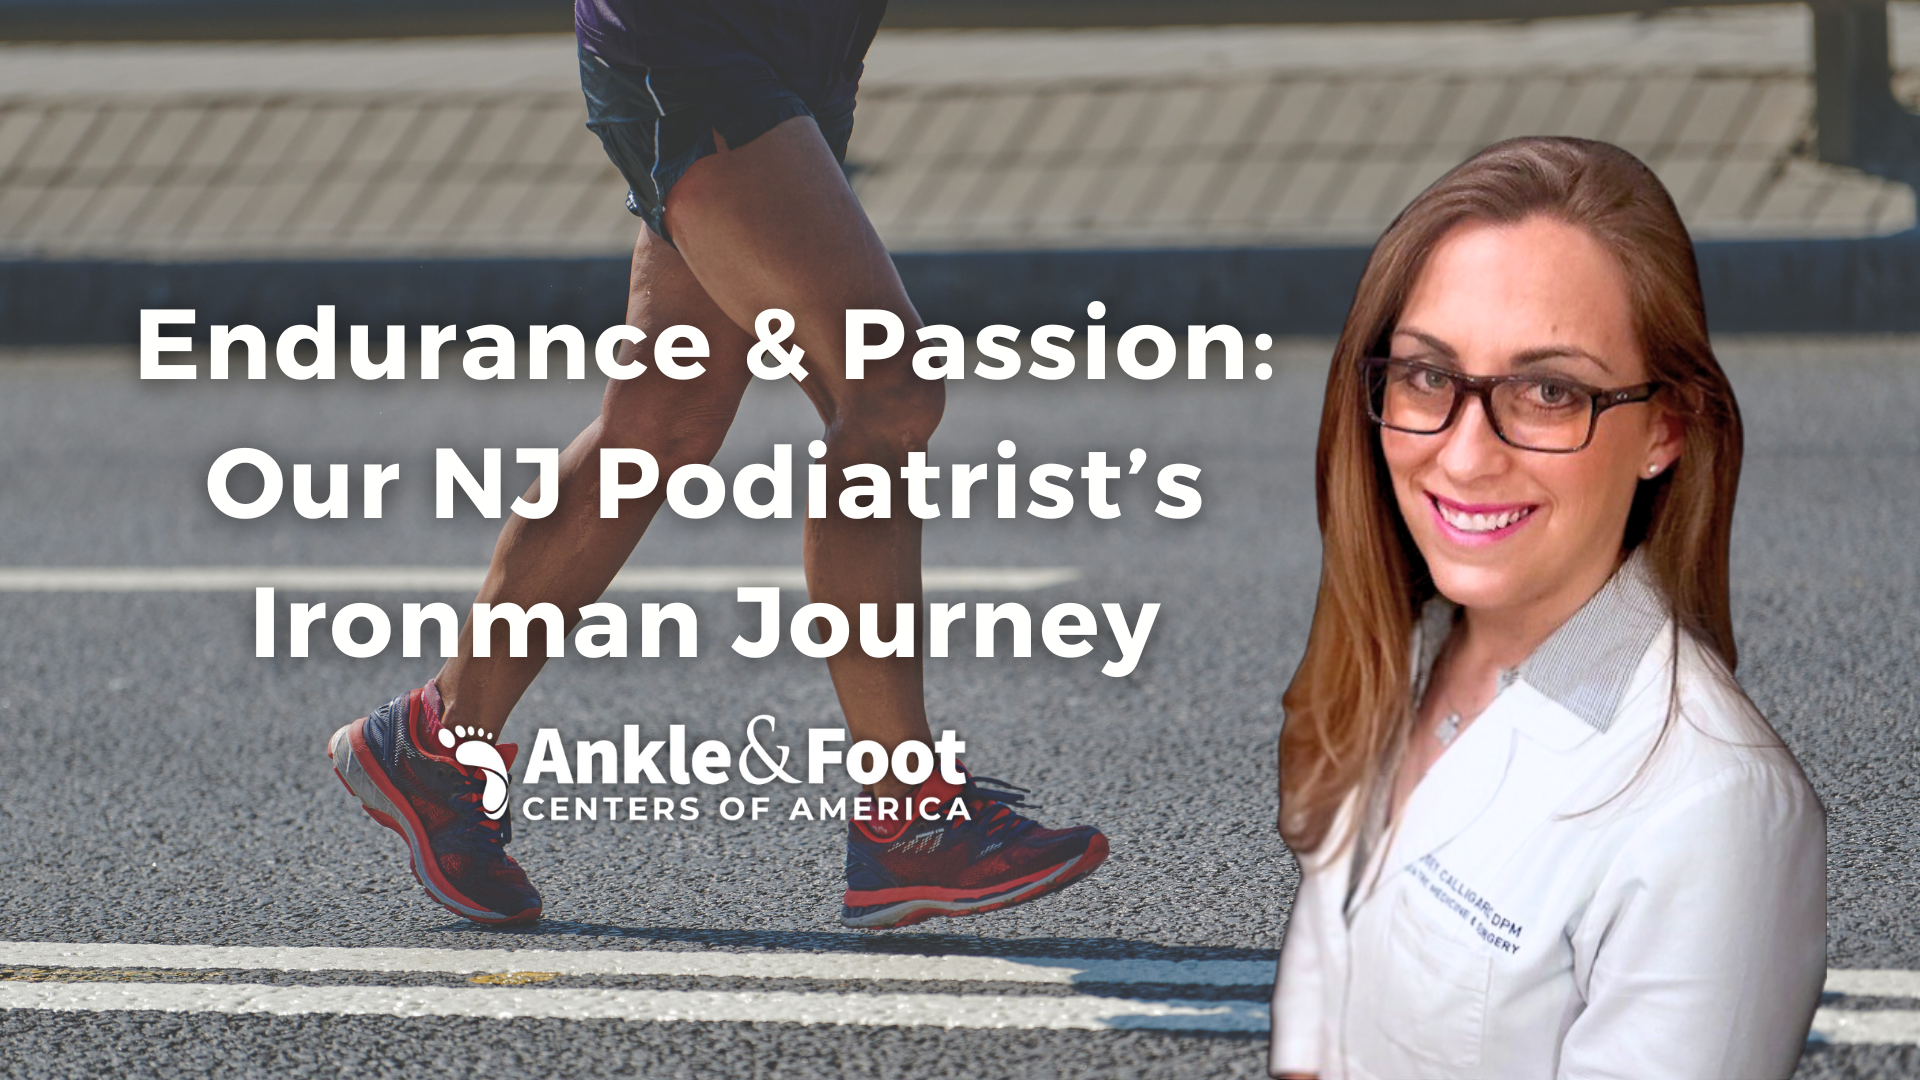 Endurance & Passion: Our NJ Podiatrist’s Ironman Journey